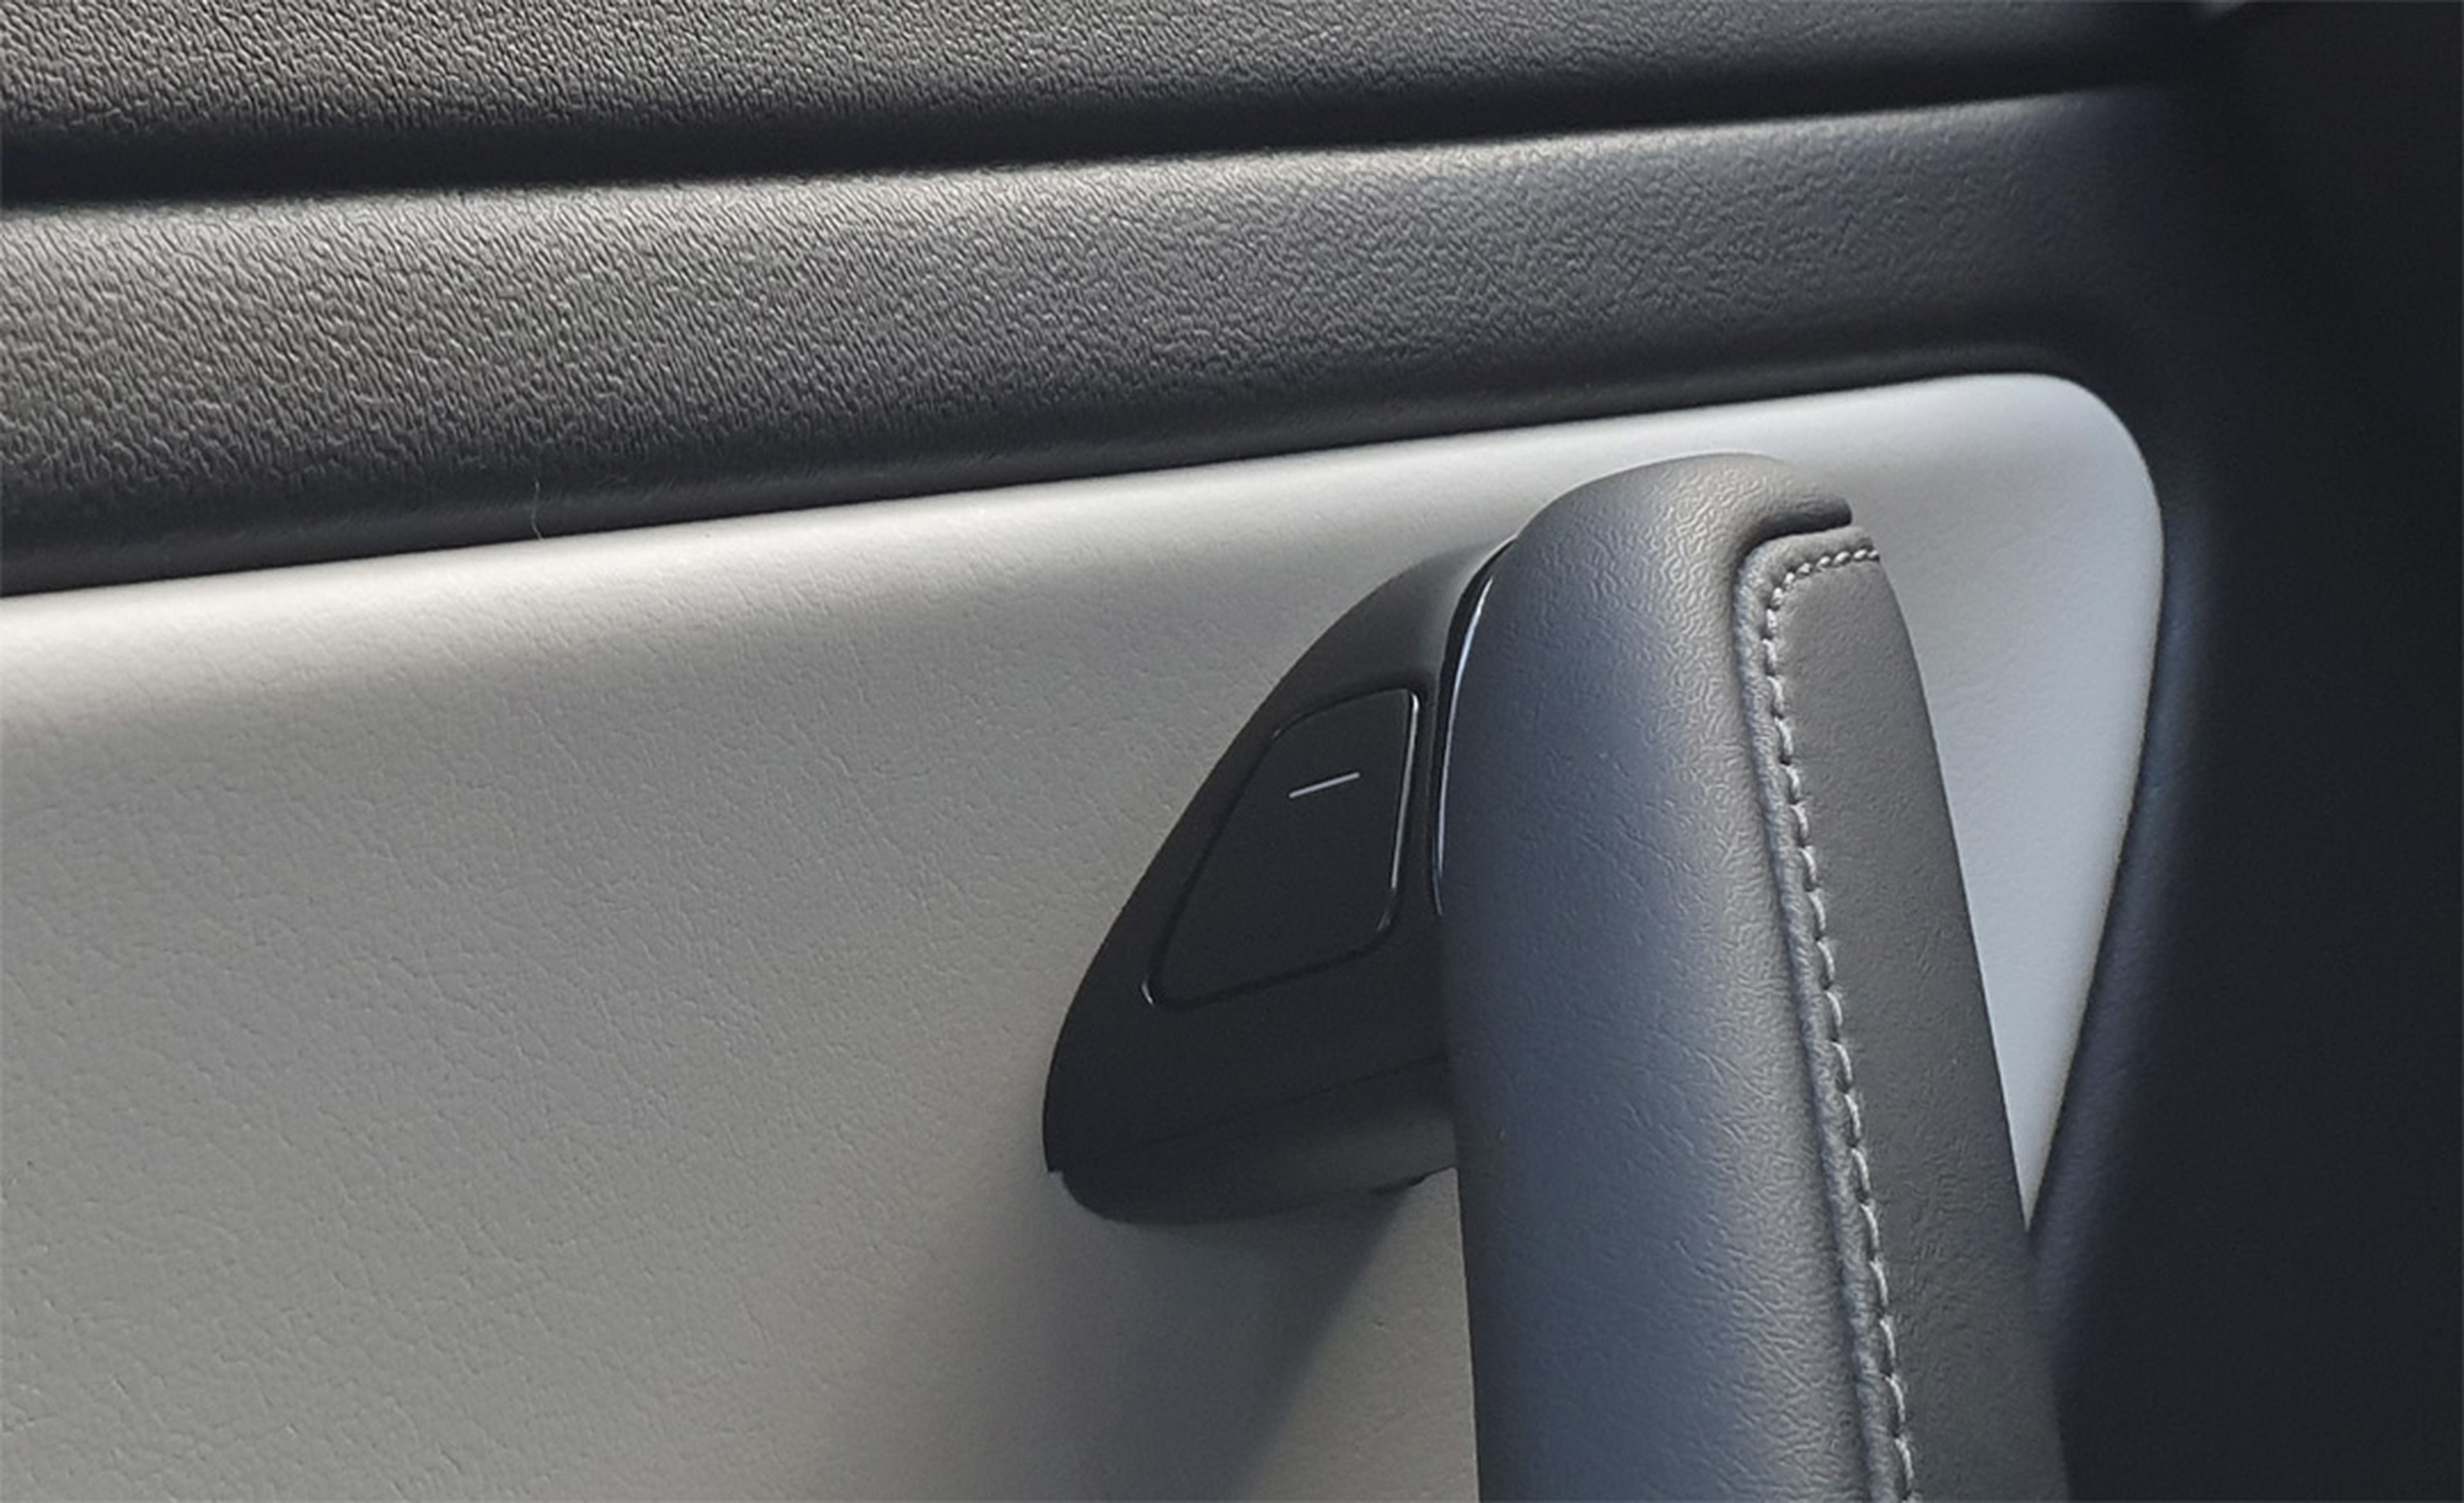 En lugar de haber un tirador manual, la puerta del Model 3 cuenta con un botón eléctrico que habilita su apertura